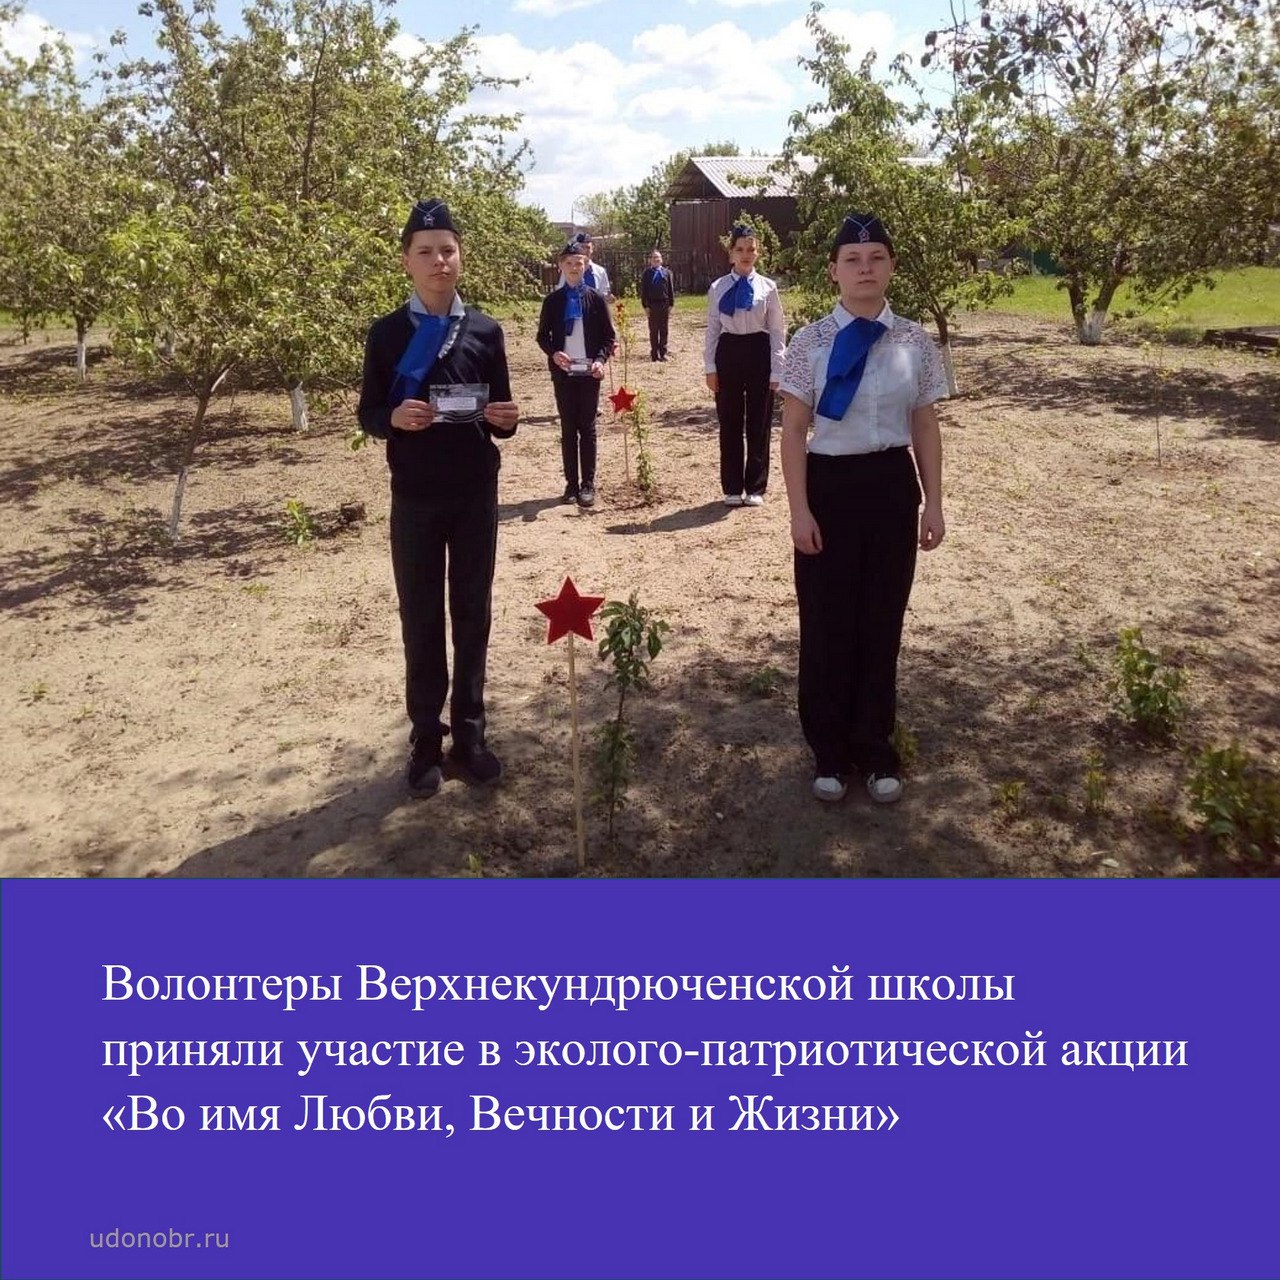 Волонтеры Верхнекундрюченской школы приняли участие эколого-патриотической акции «Во имя Любви, Вечности и Жизни»